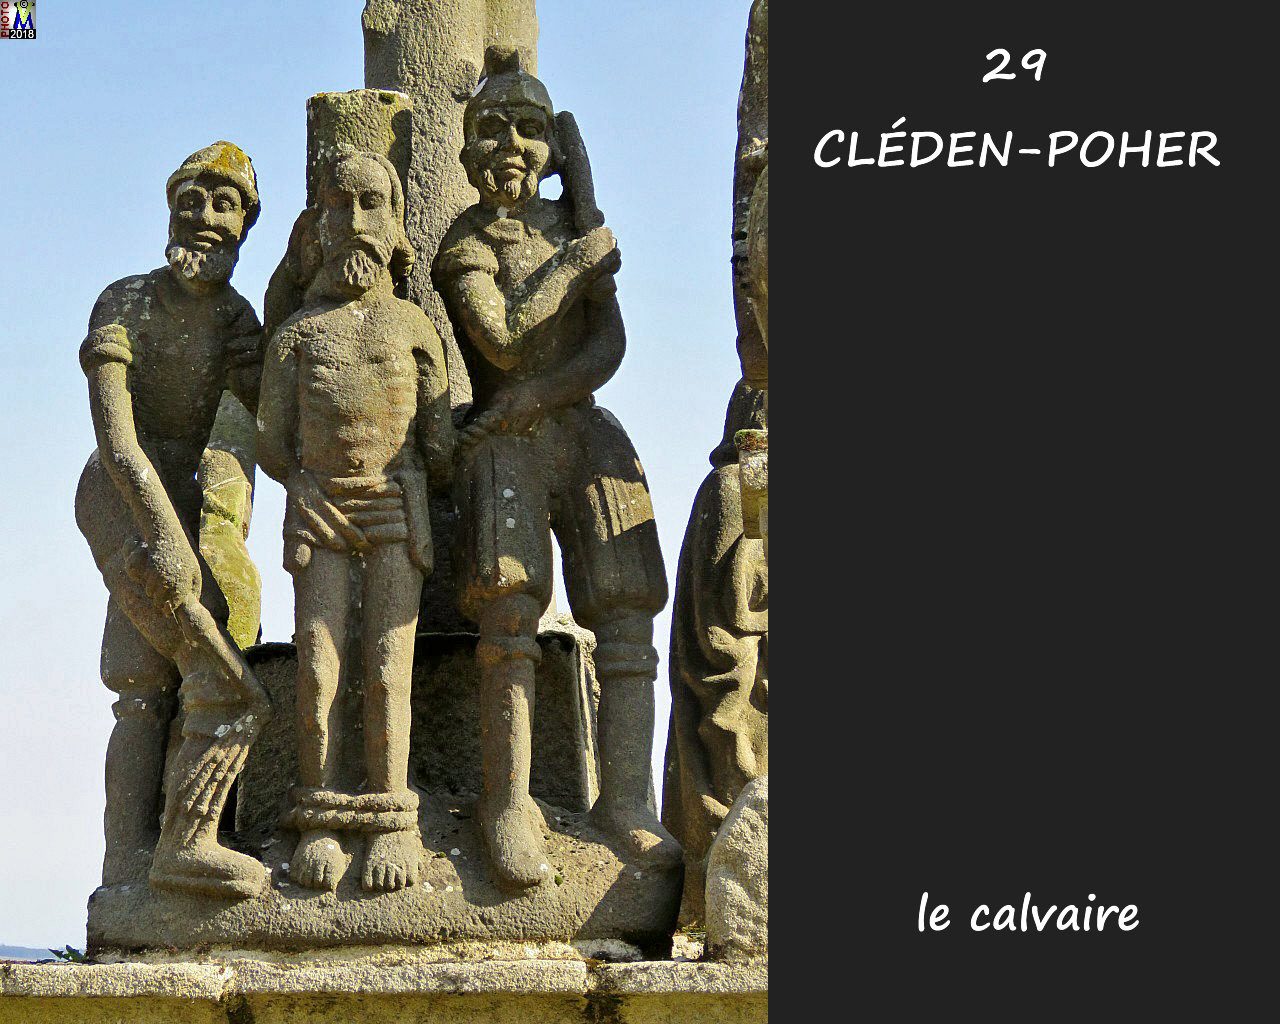 29CLEDEN-POHER_calvaire_108.jpg